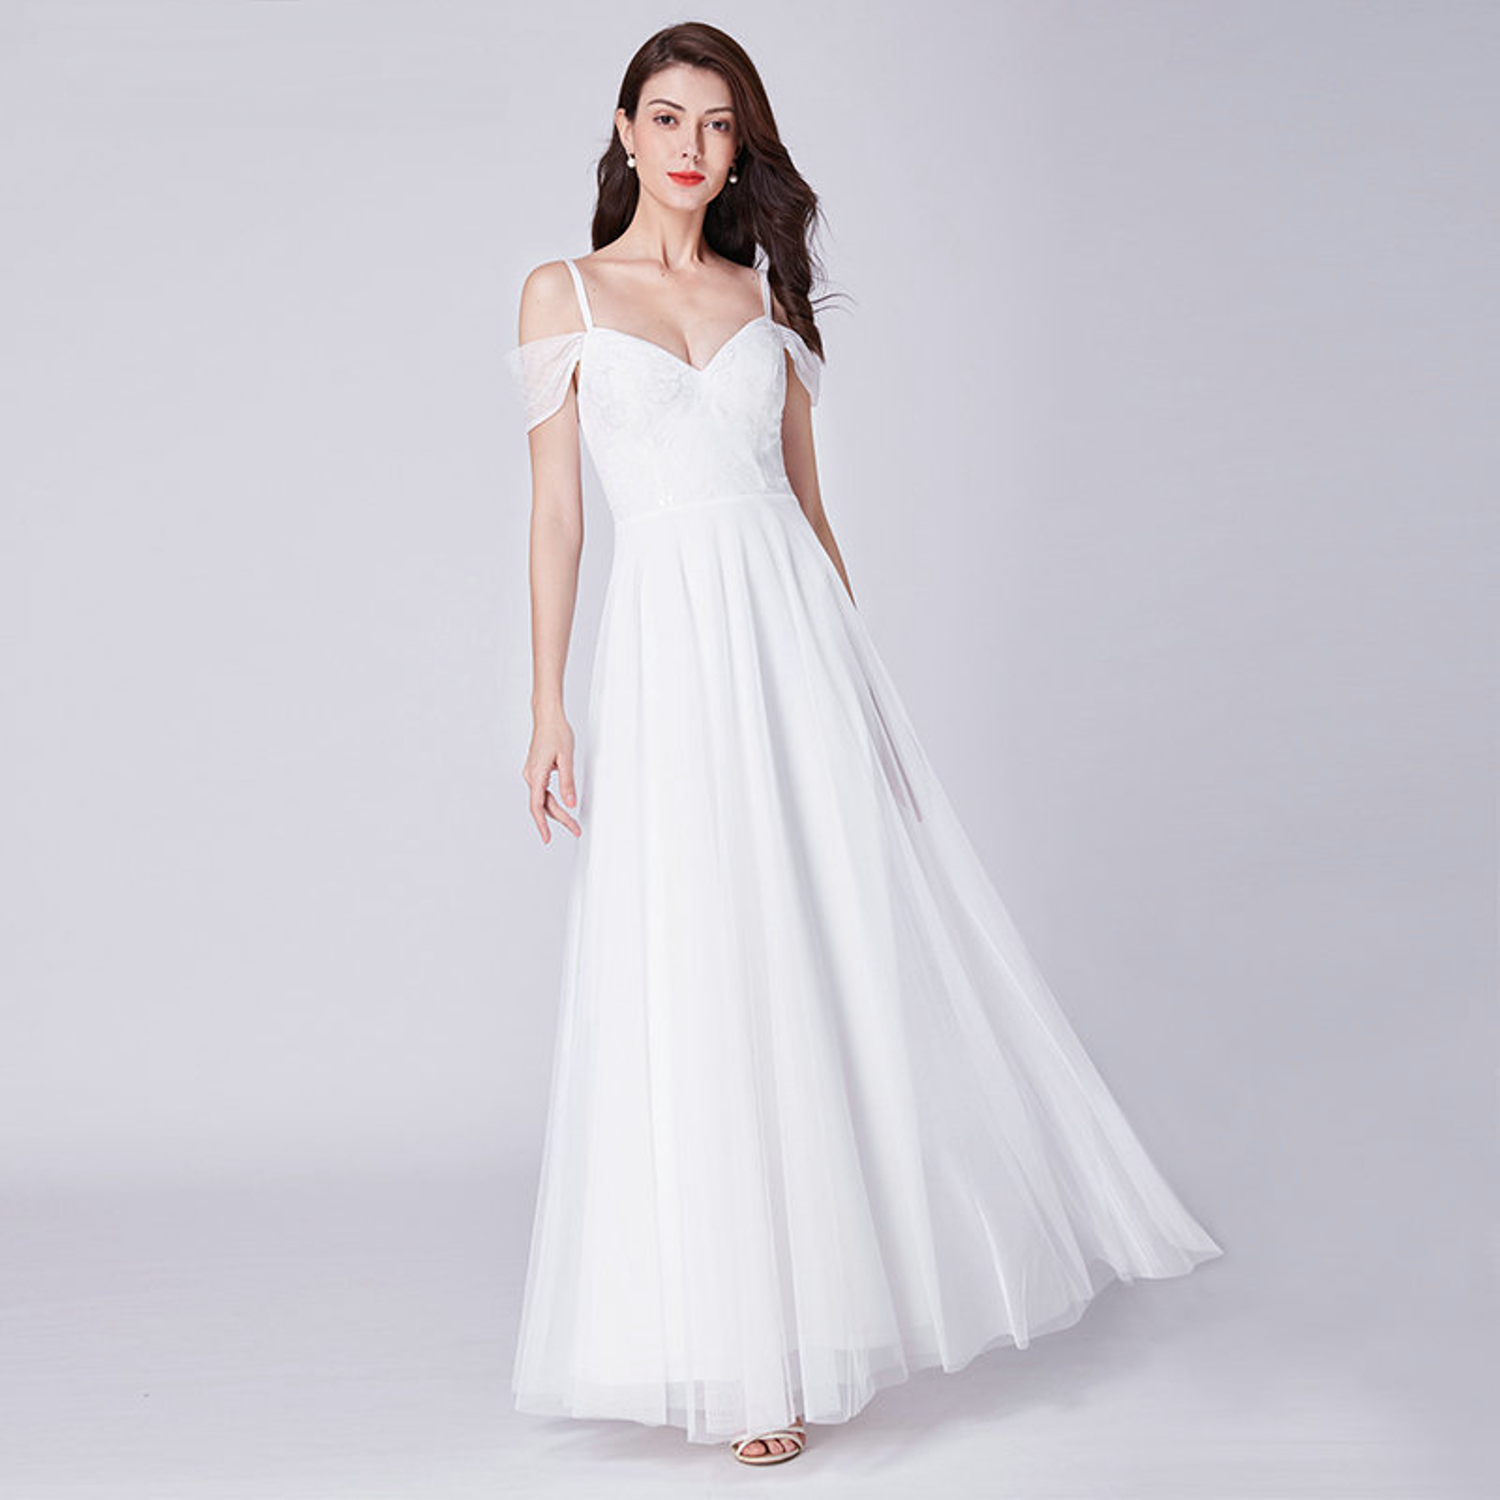 Simple off-the-shoulder wedding dress